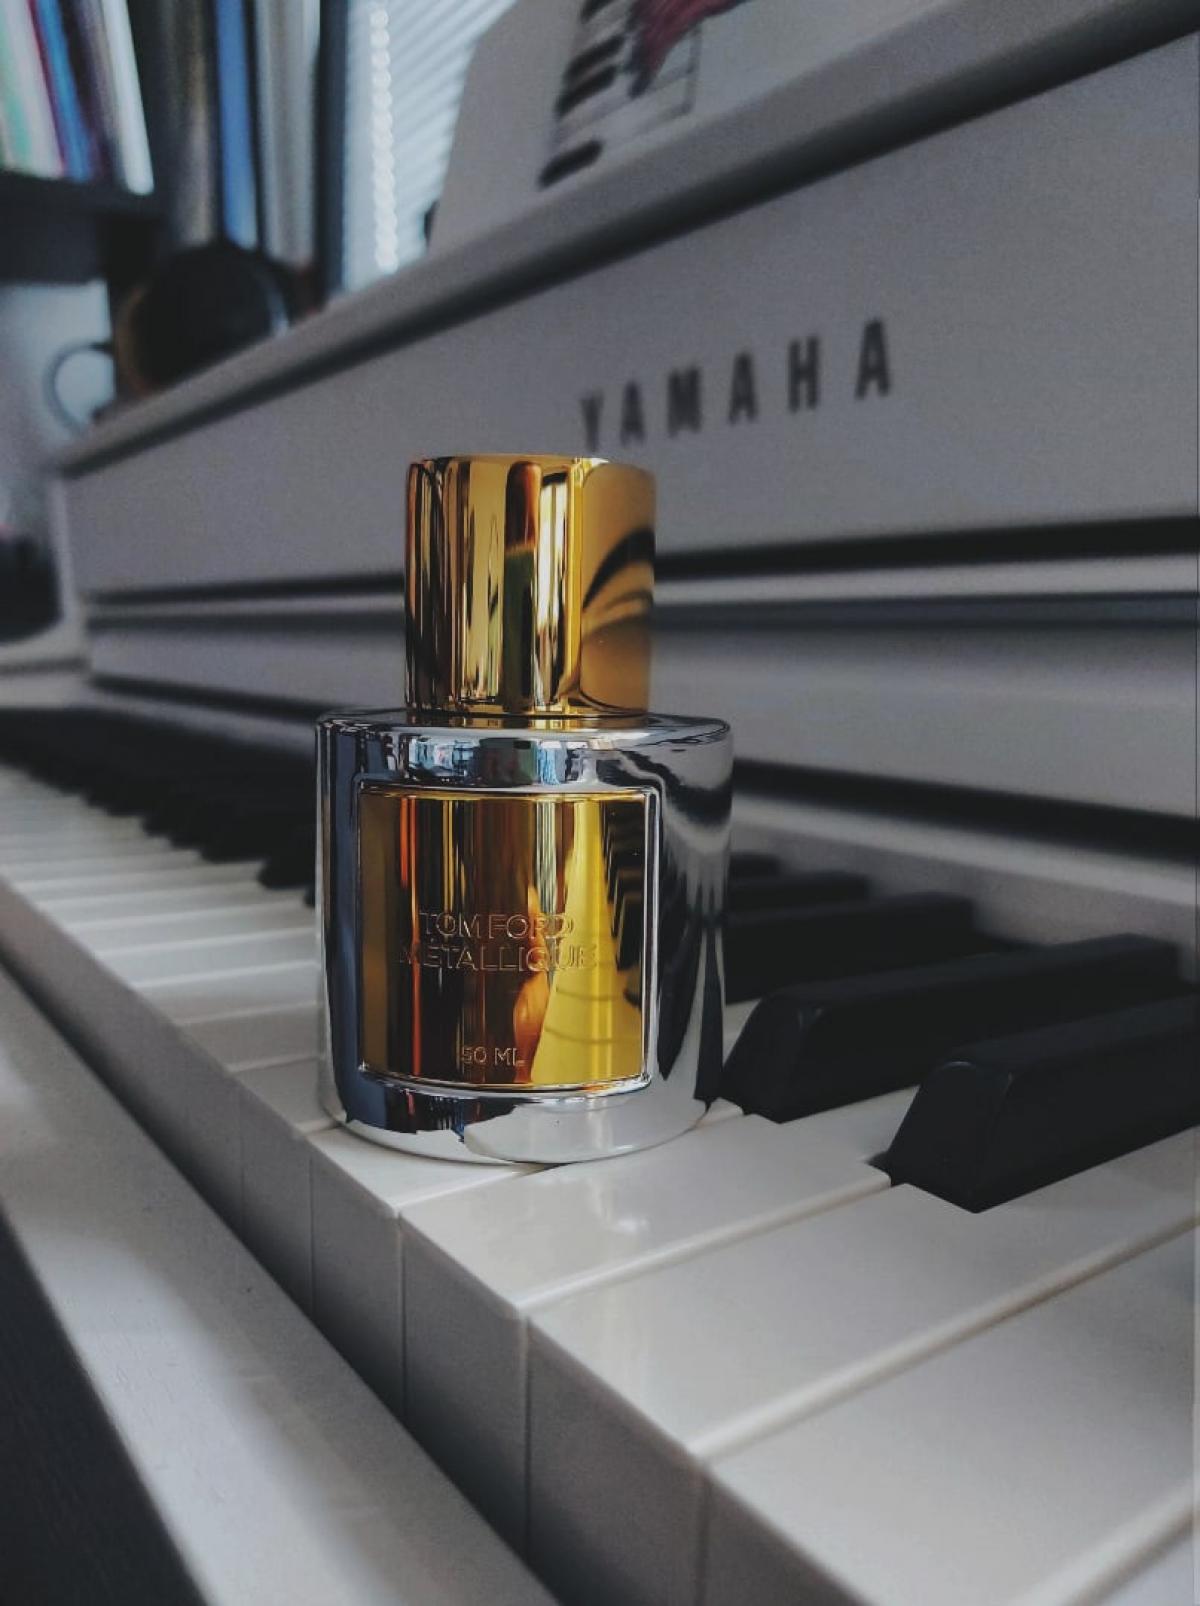 Metallique Tom Ford perfume - a novo fragrância Feminino 2019